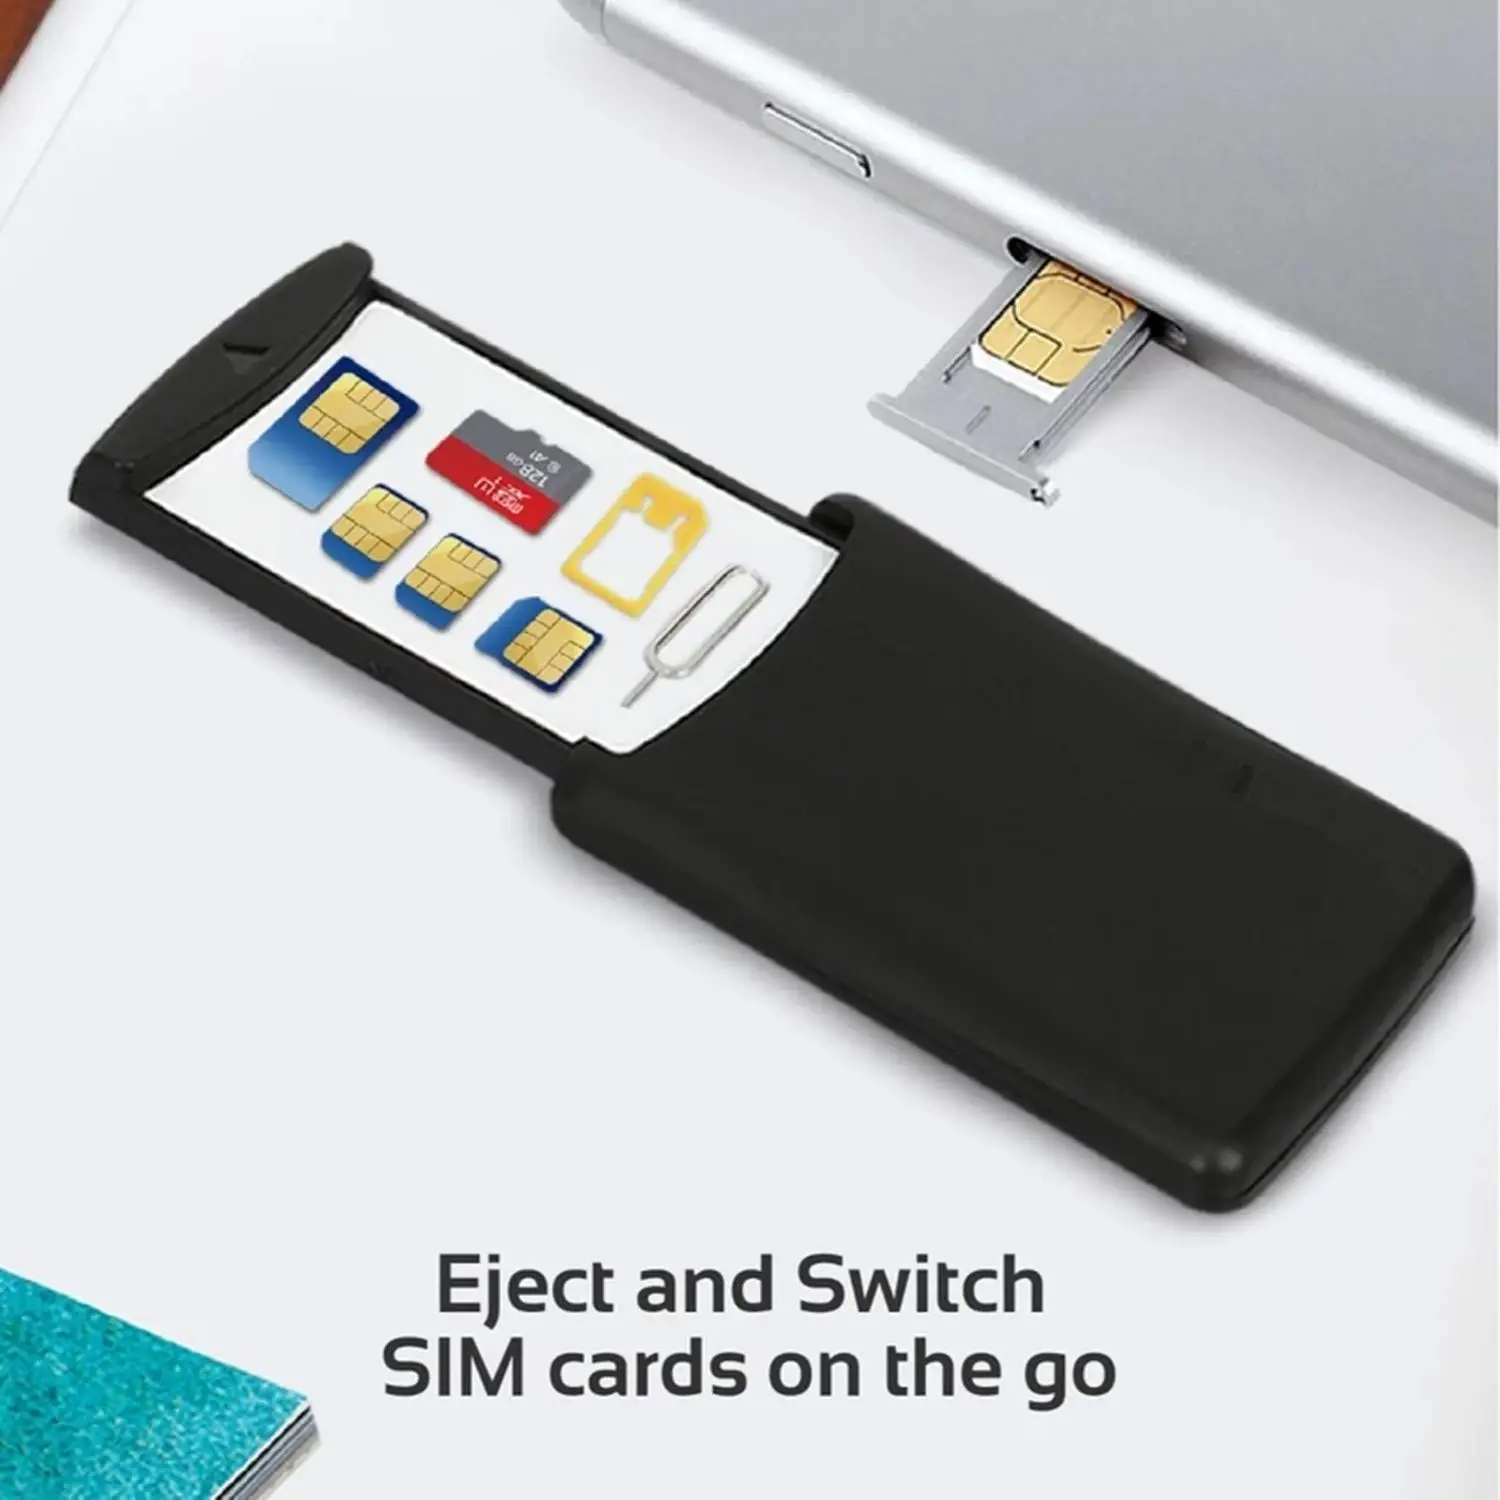 Безопасный чехол для мобильного телефона - безопасное хранение SIM-карты и карты Micro SD - включает адаптер Micro SIM, адаптер Nano SIM и pin-код для снятия